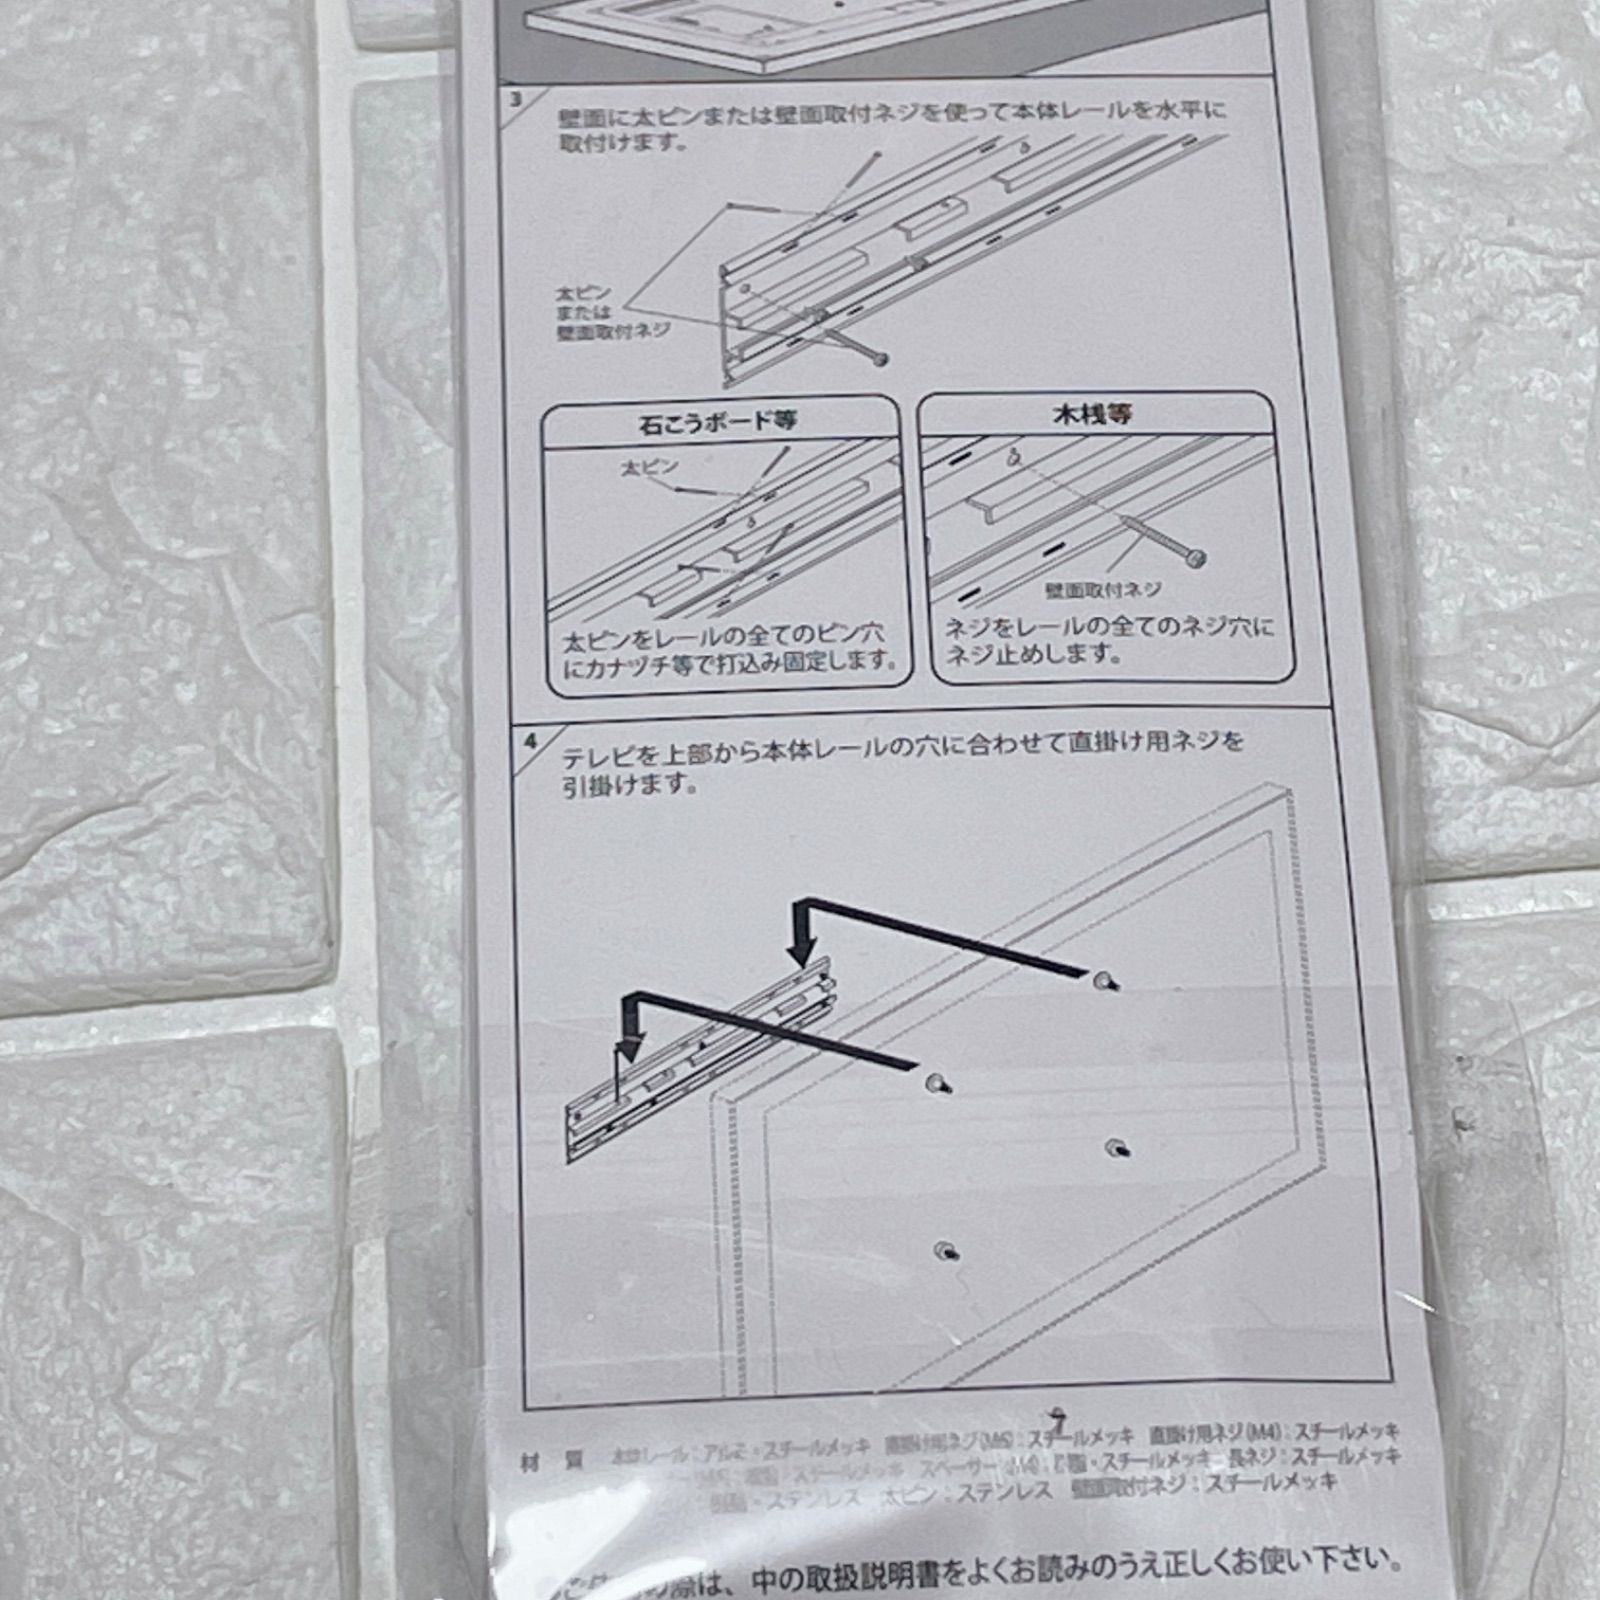 オリジン工業 簡単壁掛けユニット テレビ壁掛けレール 300 M-5051 日本製 made in Japan - メルカリ